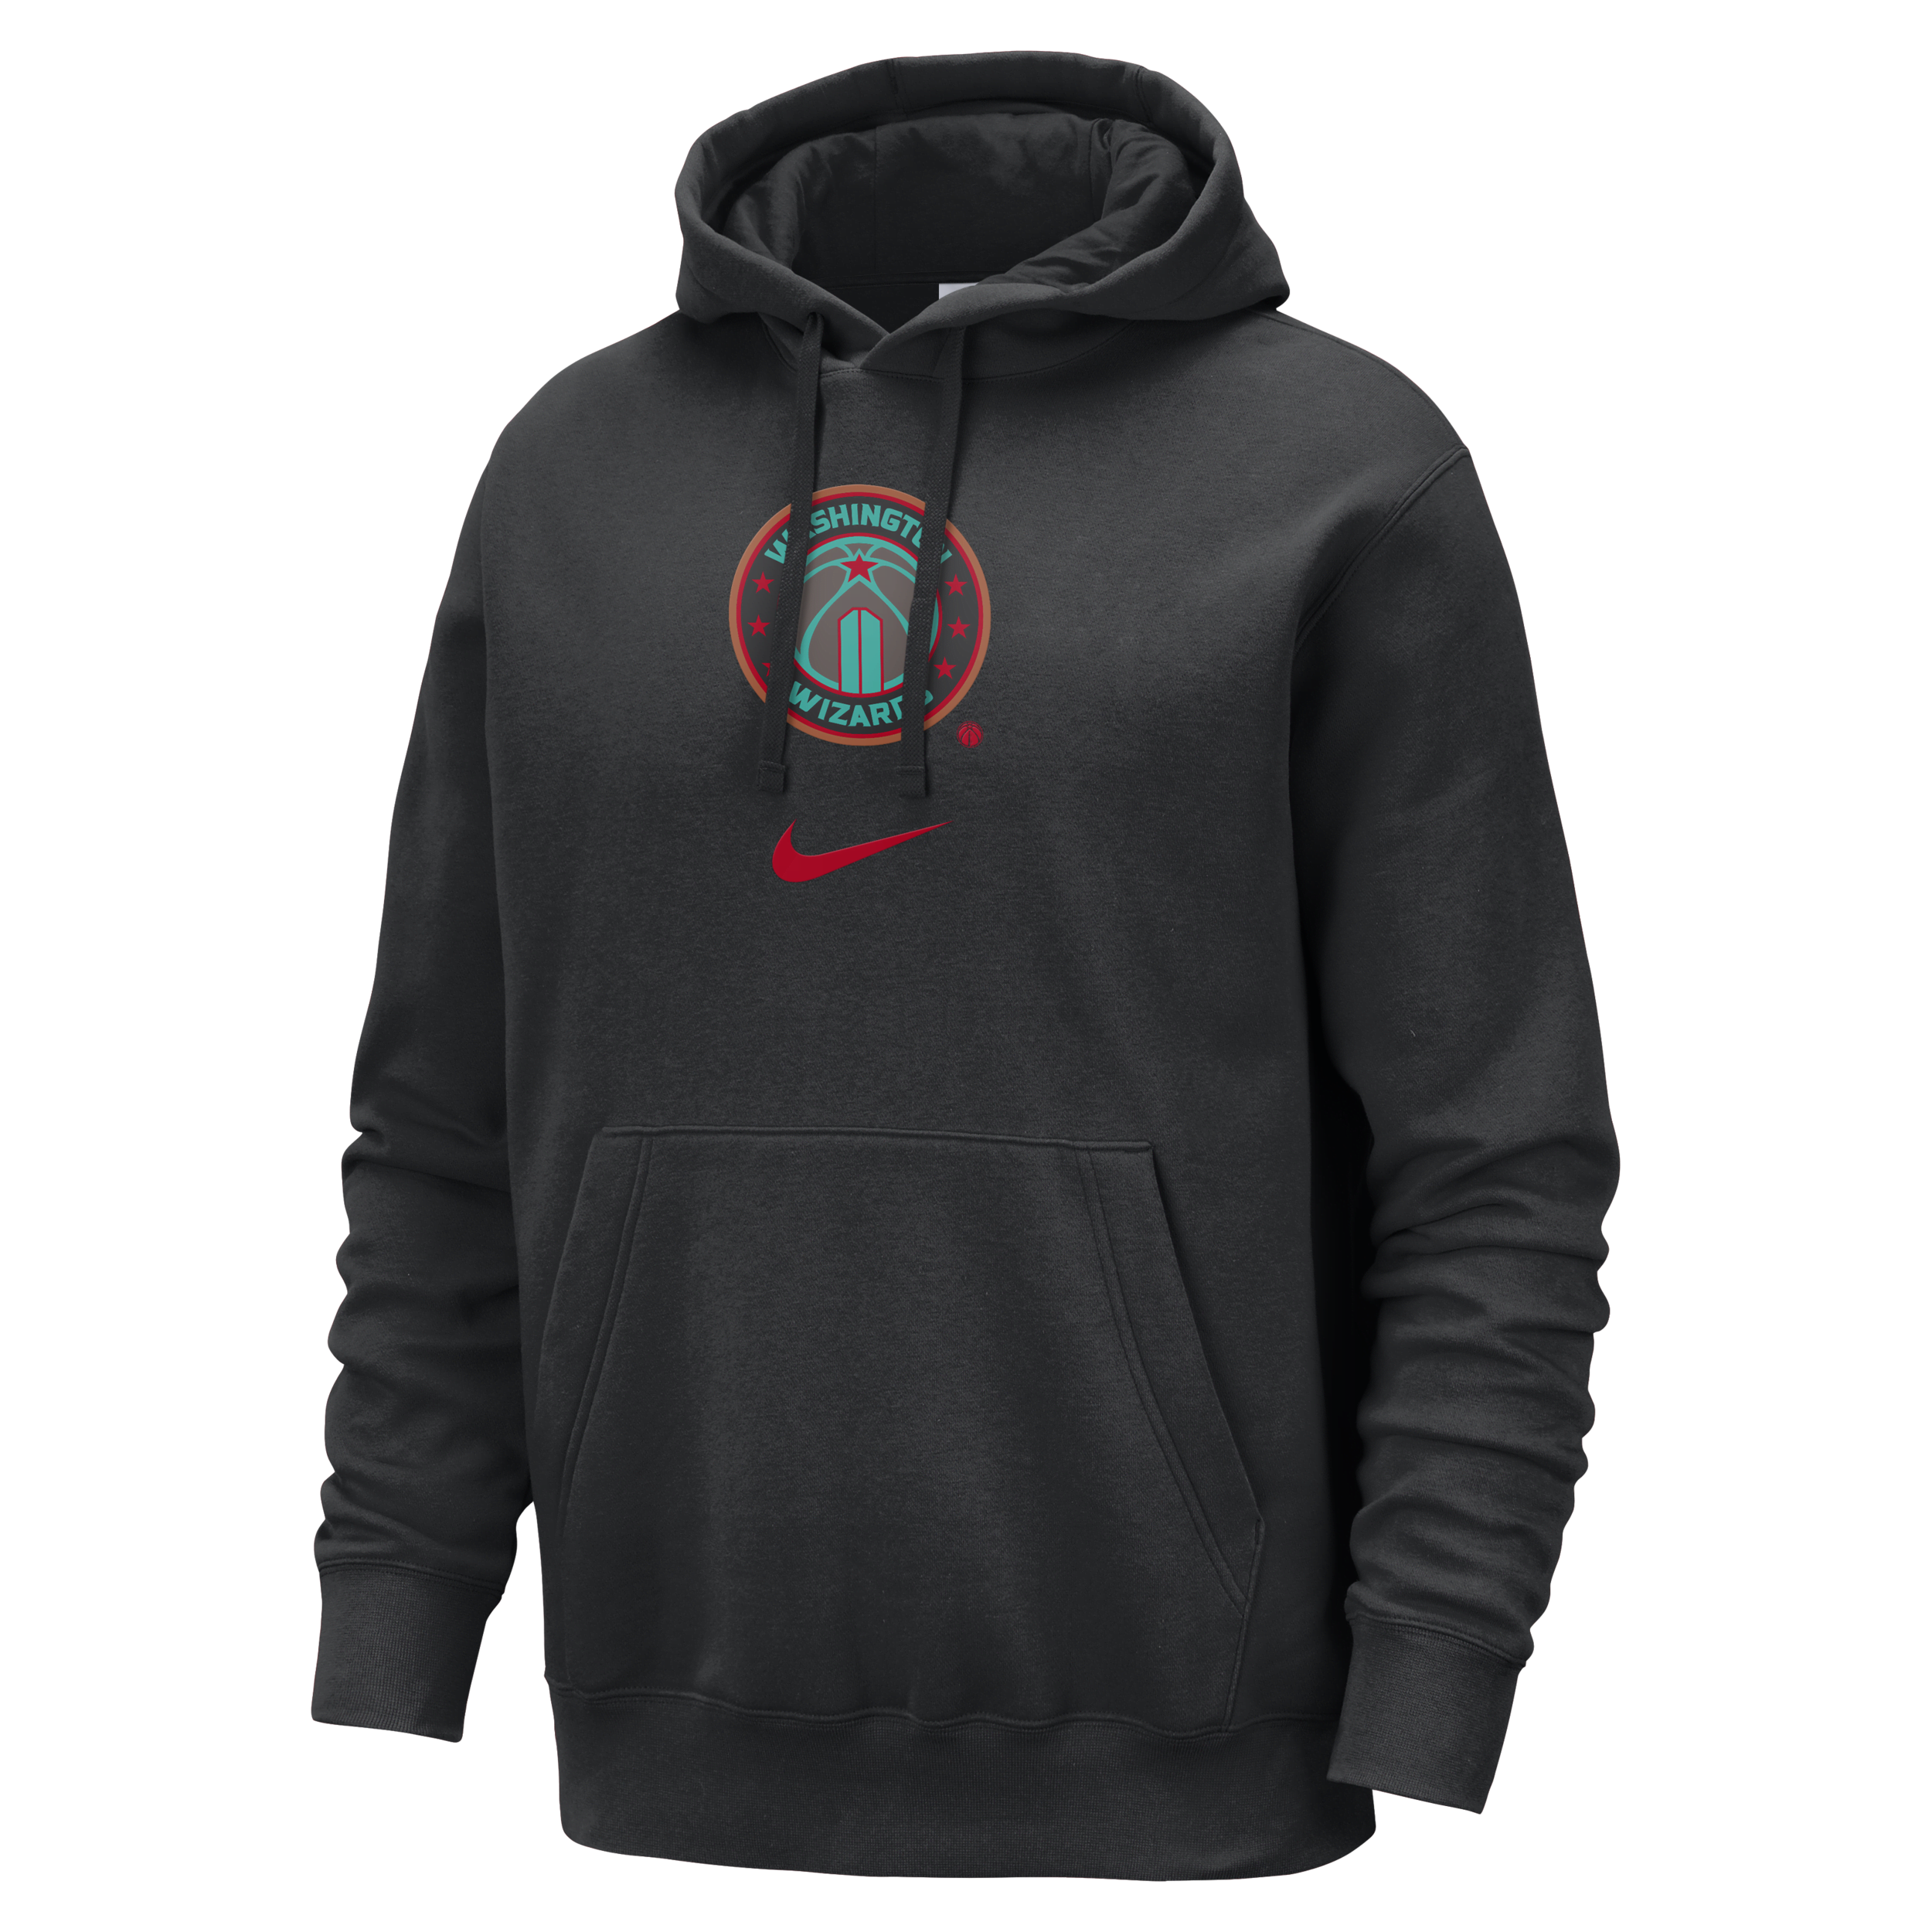 Washington Wizards Club Fleece City Edition Nike NBA-hoodie voor heren - Zwart